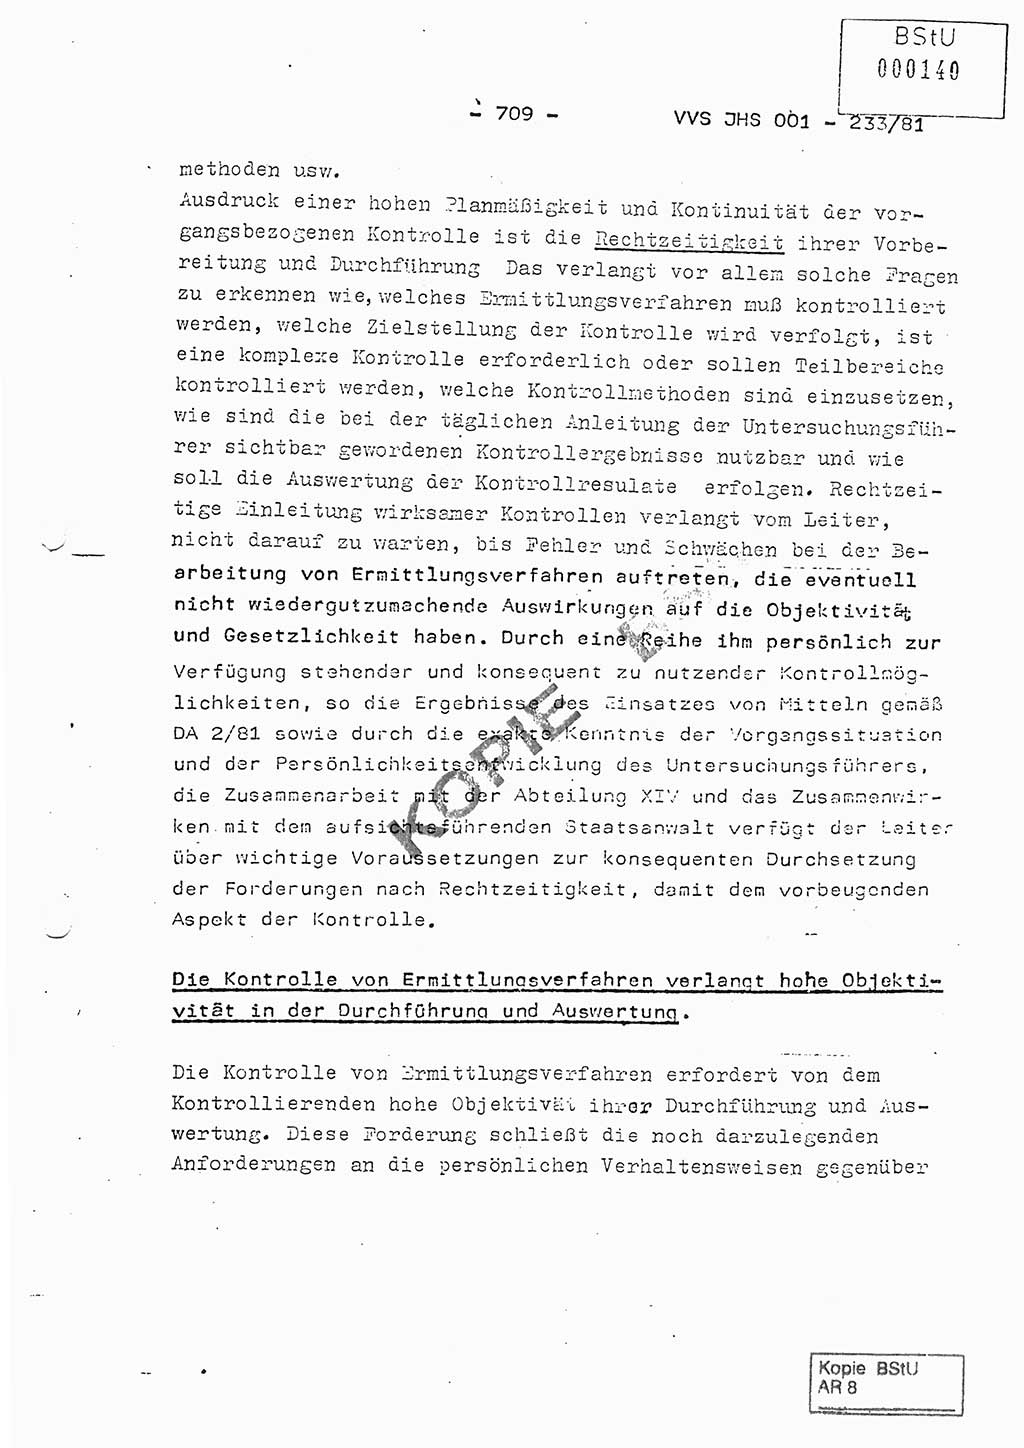 Dissertation Oberstleutnant Horst Zank (JHS), Oberstleutnant Dr. Karl-Heinz Knoblauch (JHS), Oberstleutnant Gustav-Adolf Kowalewski (HA Ⅸ), Oberstleutnant Wolfgang Plötner (HA Ⅸ), Ministerium für Staatssicherheit (MfS) [Deutsche Demokratische Republik (DDR)], Juristische Hochschule (JHS), Vertrauliche Verschlußsache (VVS) o001-233/81, Potsdam 1981, Blatt 709 (Diss. MfS DDR JHS VVS o001-233/81 1981, Bl. 709)